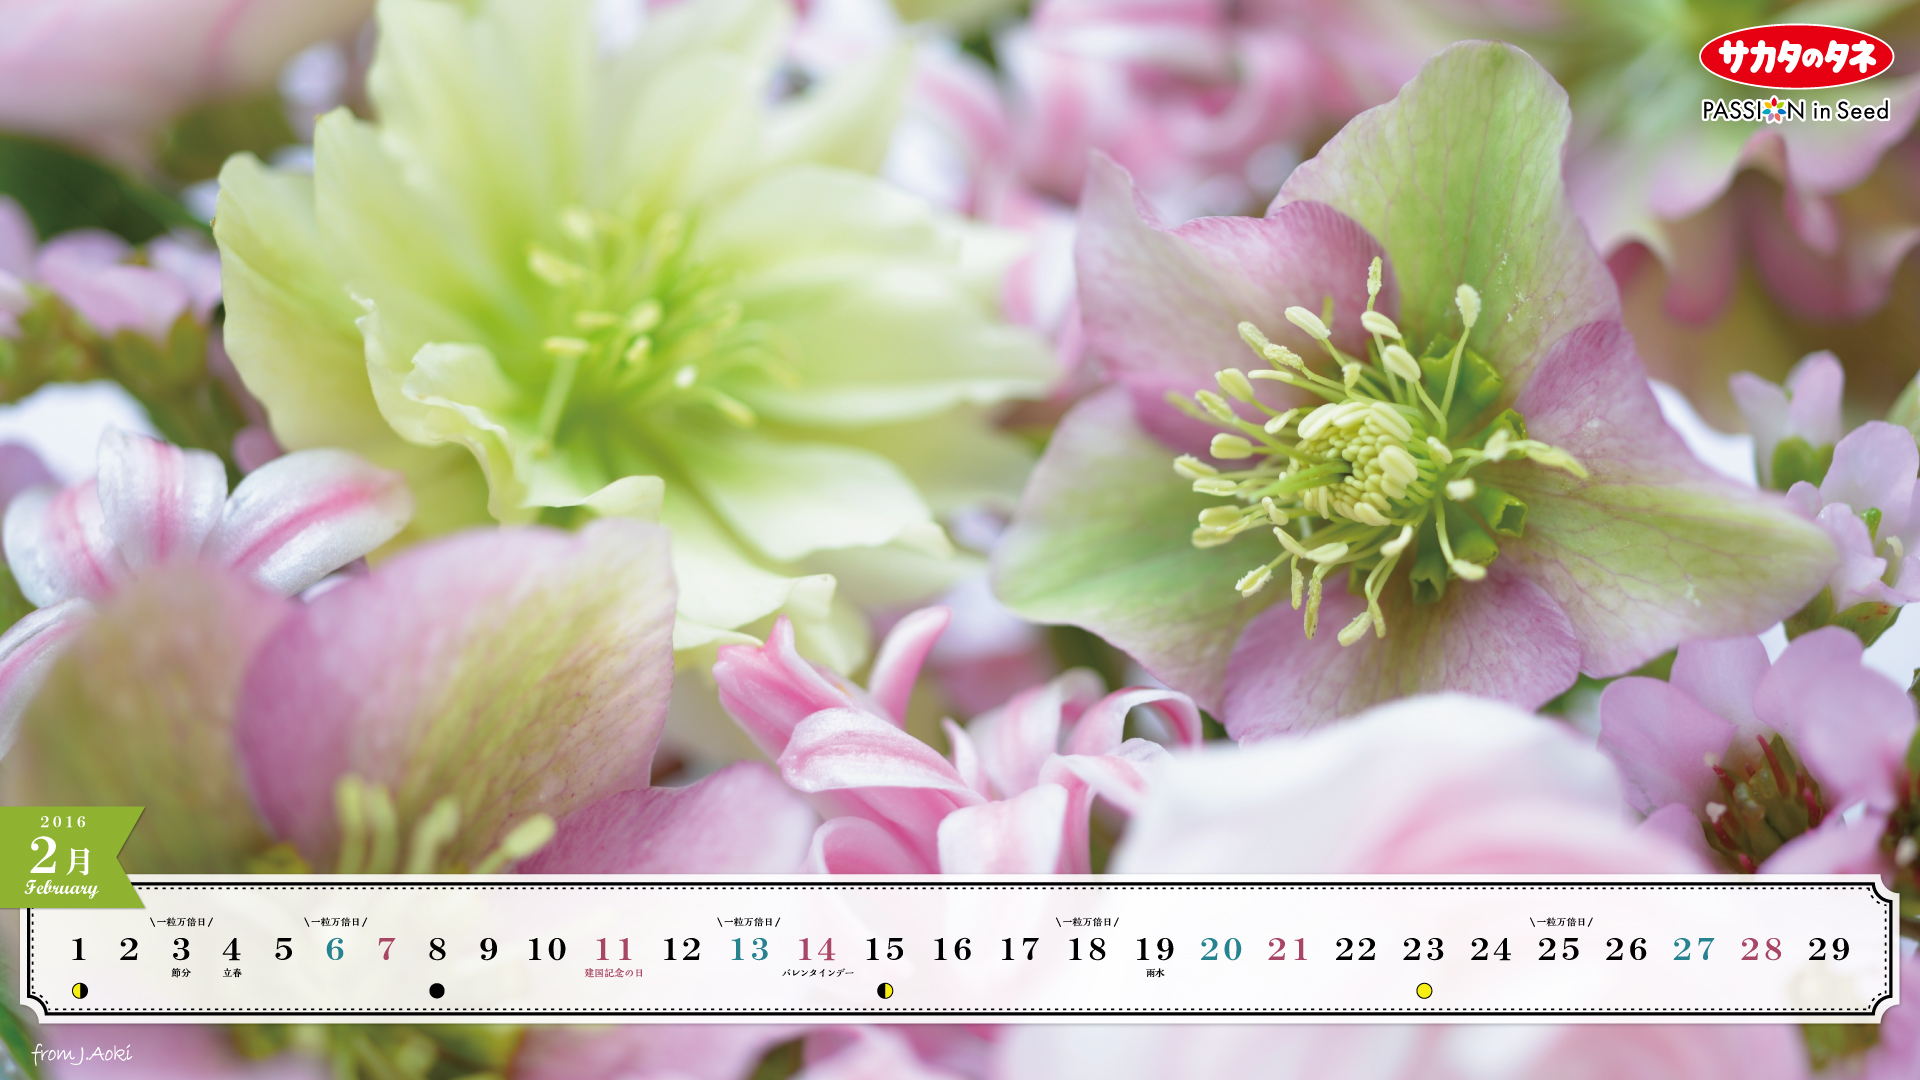 青木純子さんの壁紙カレンダー プレゼント サカタのタネ 園芸情報サイト 園芸通信